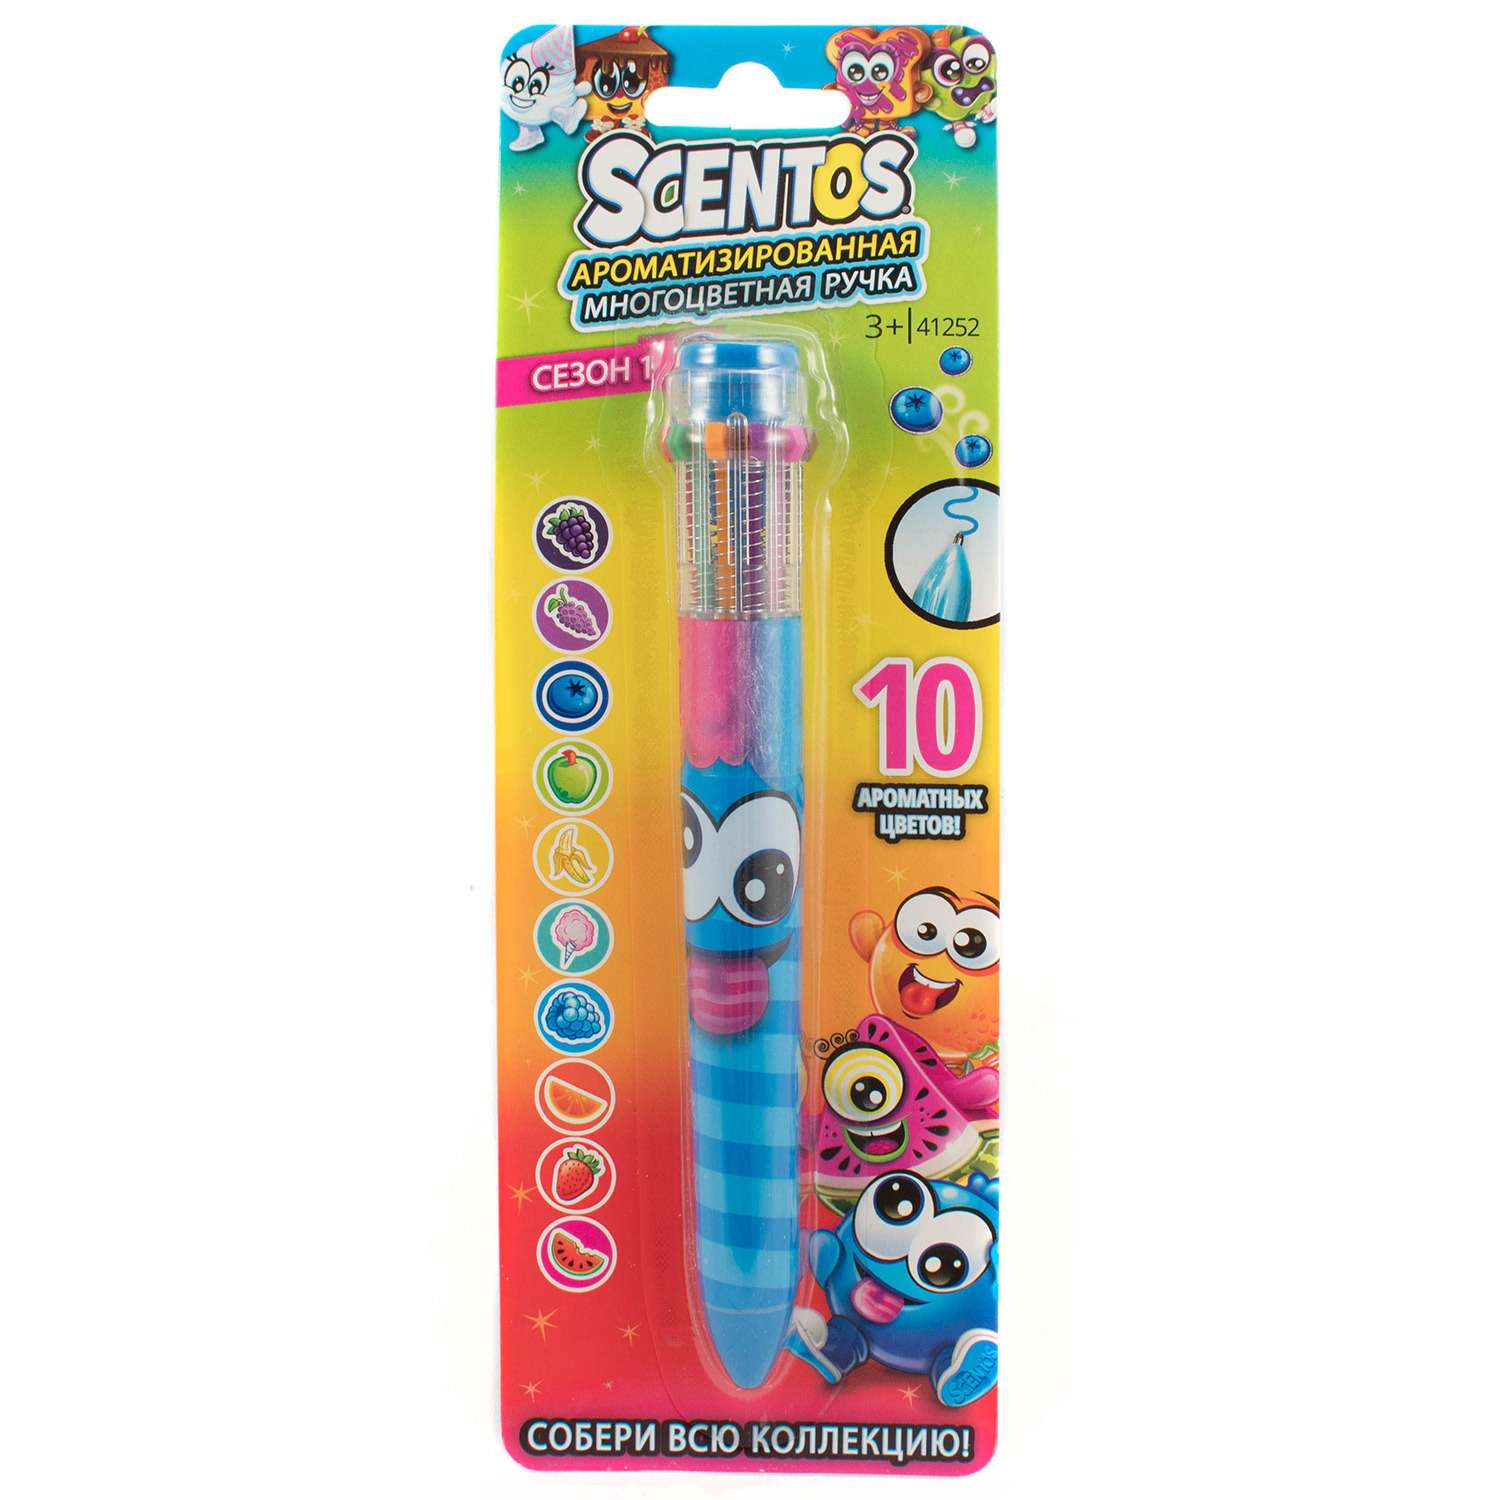 Ручка Scentos ароматизированная 10цветов Синяя 41252 - фото 2